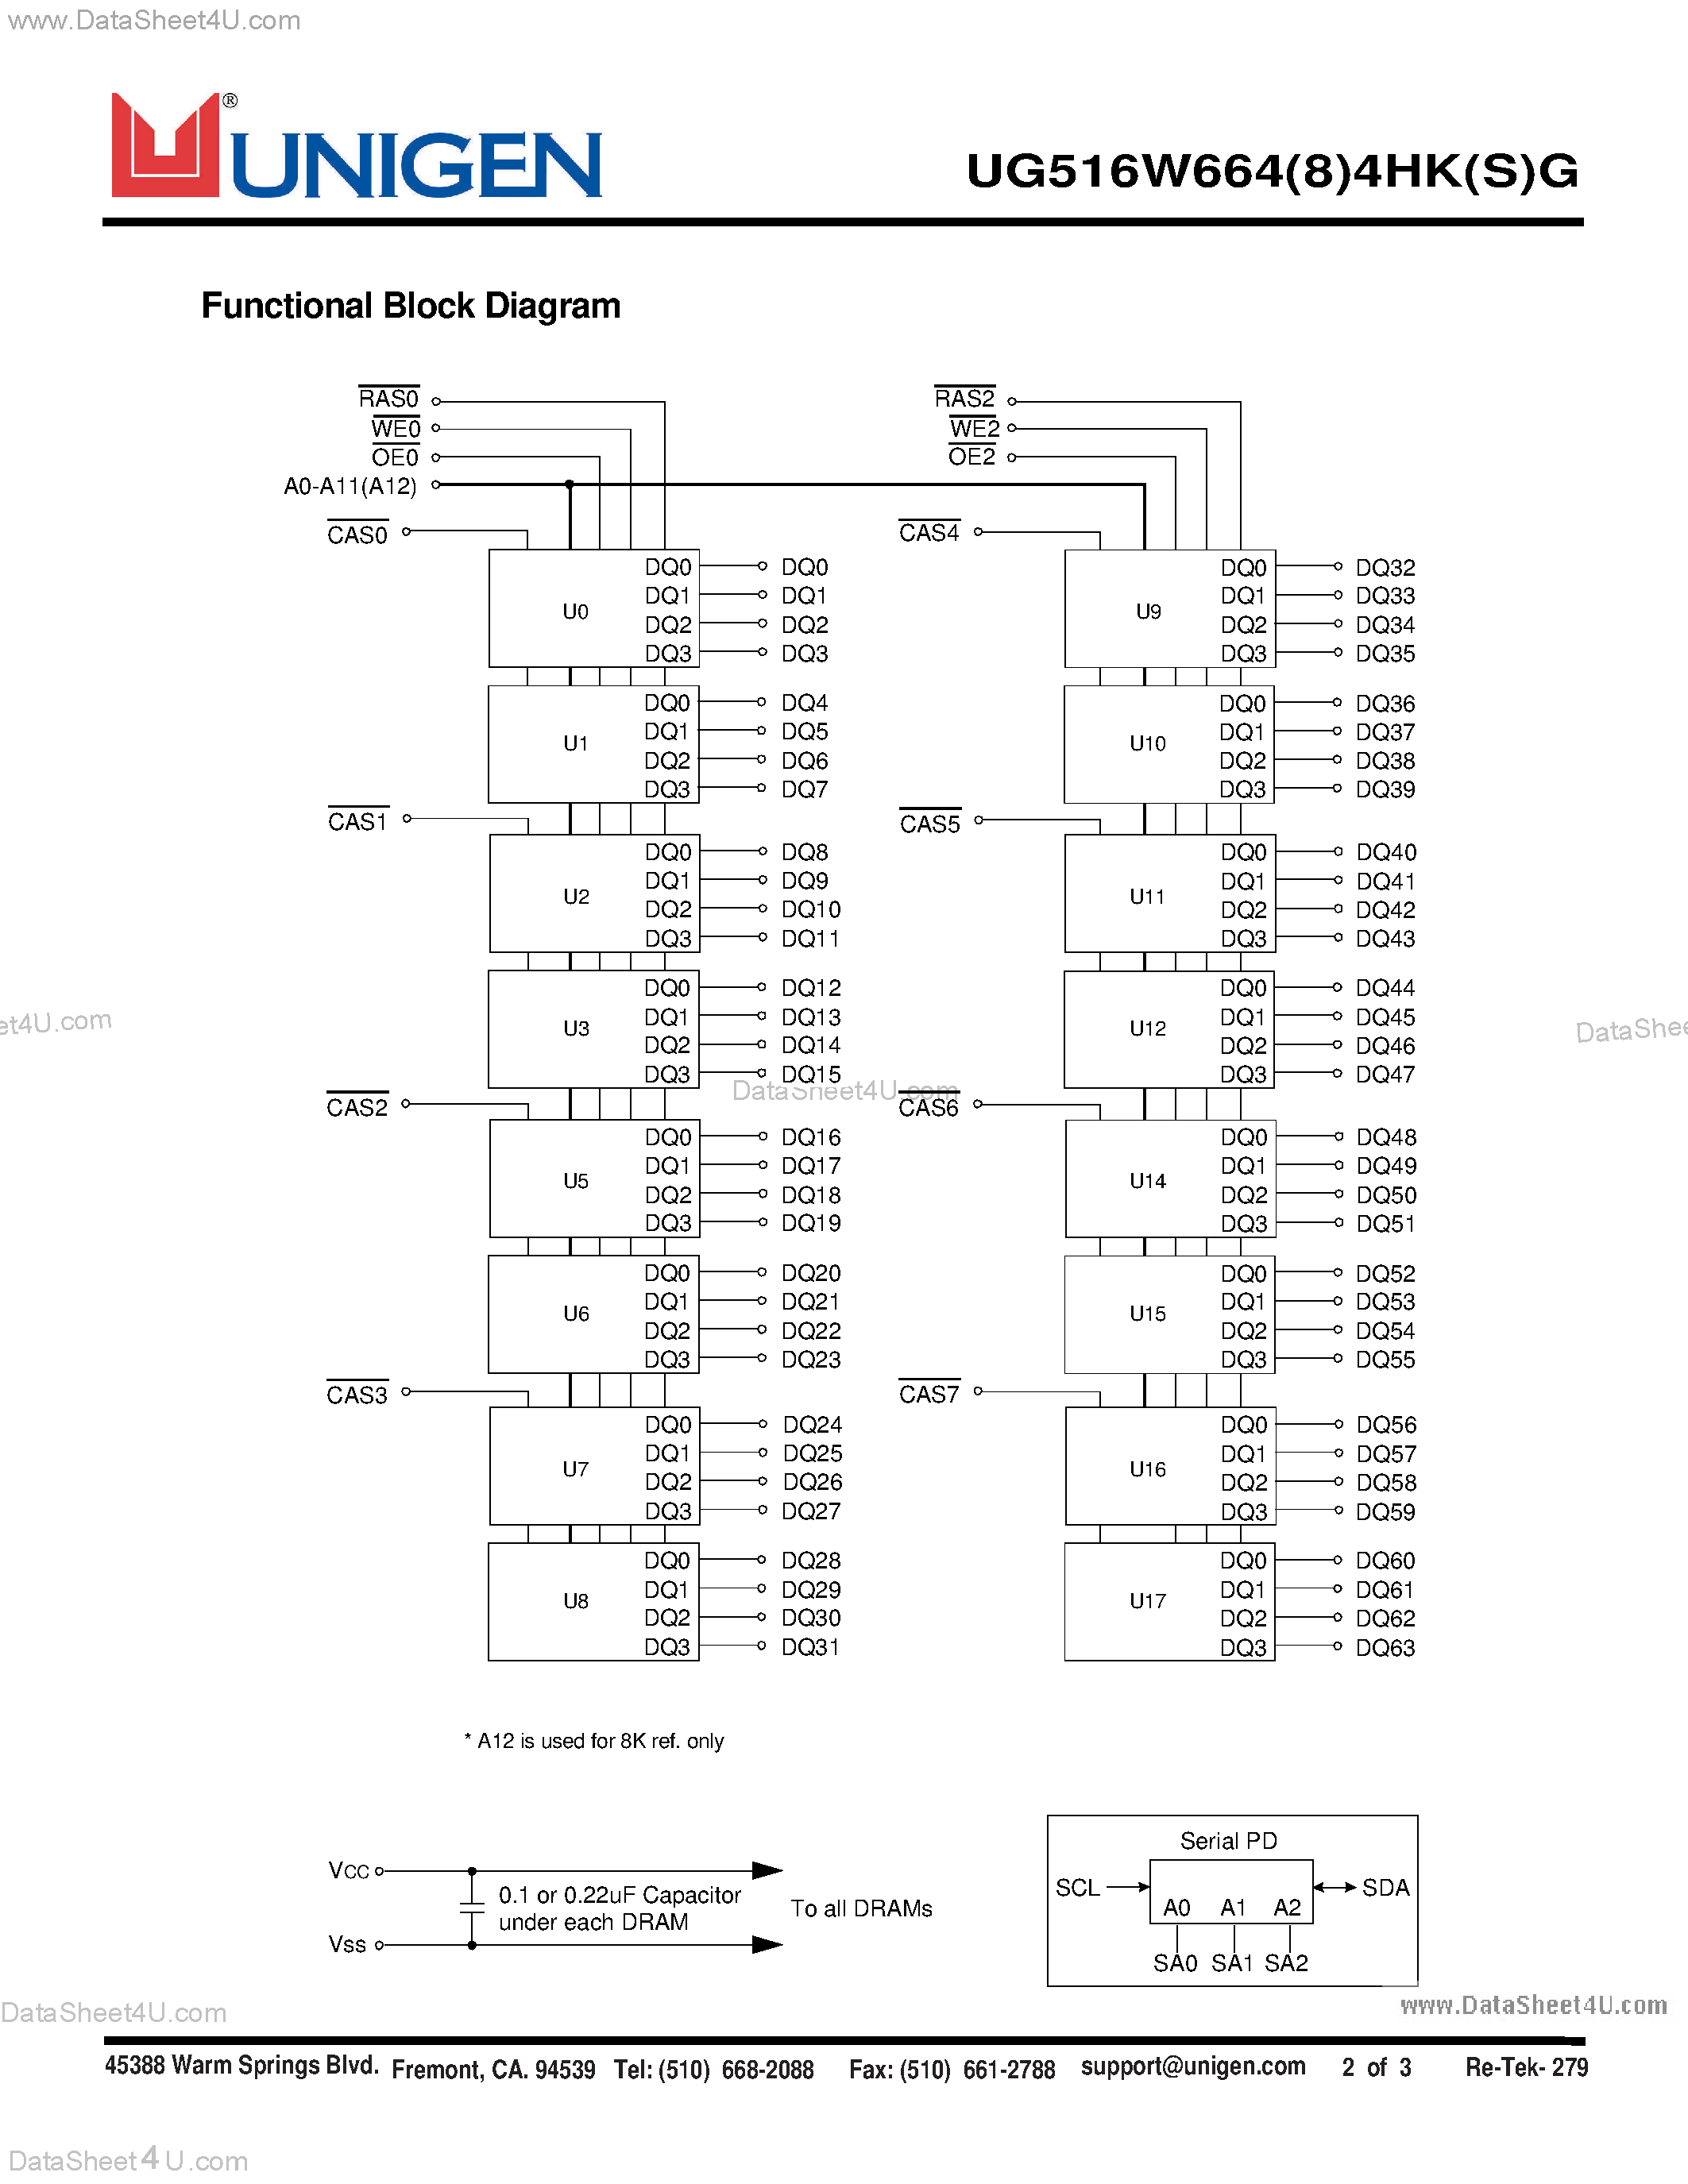 Даташит UG516W6644HKG - UG516W664(8)4HS(K)G - 128M DRAM страница 2